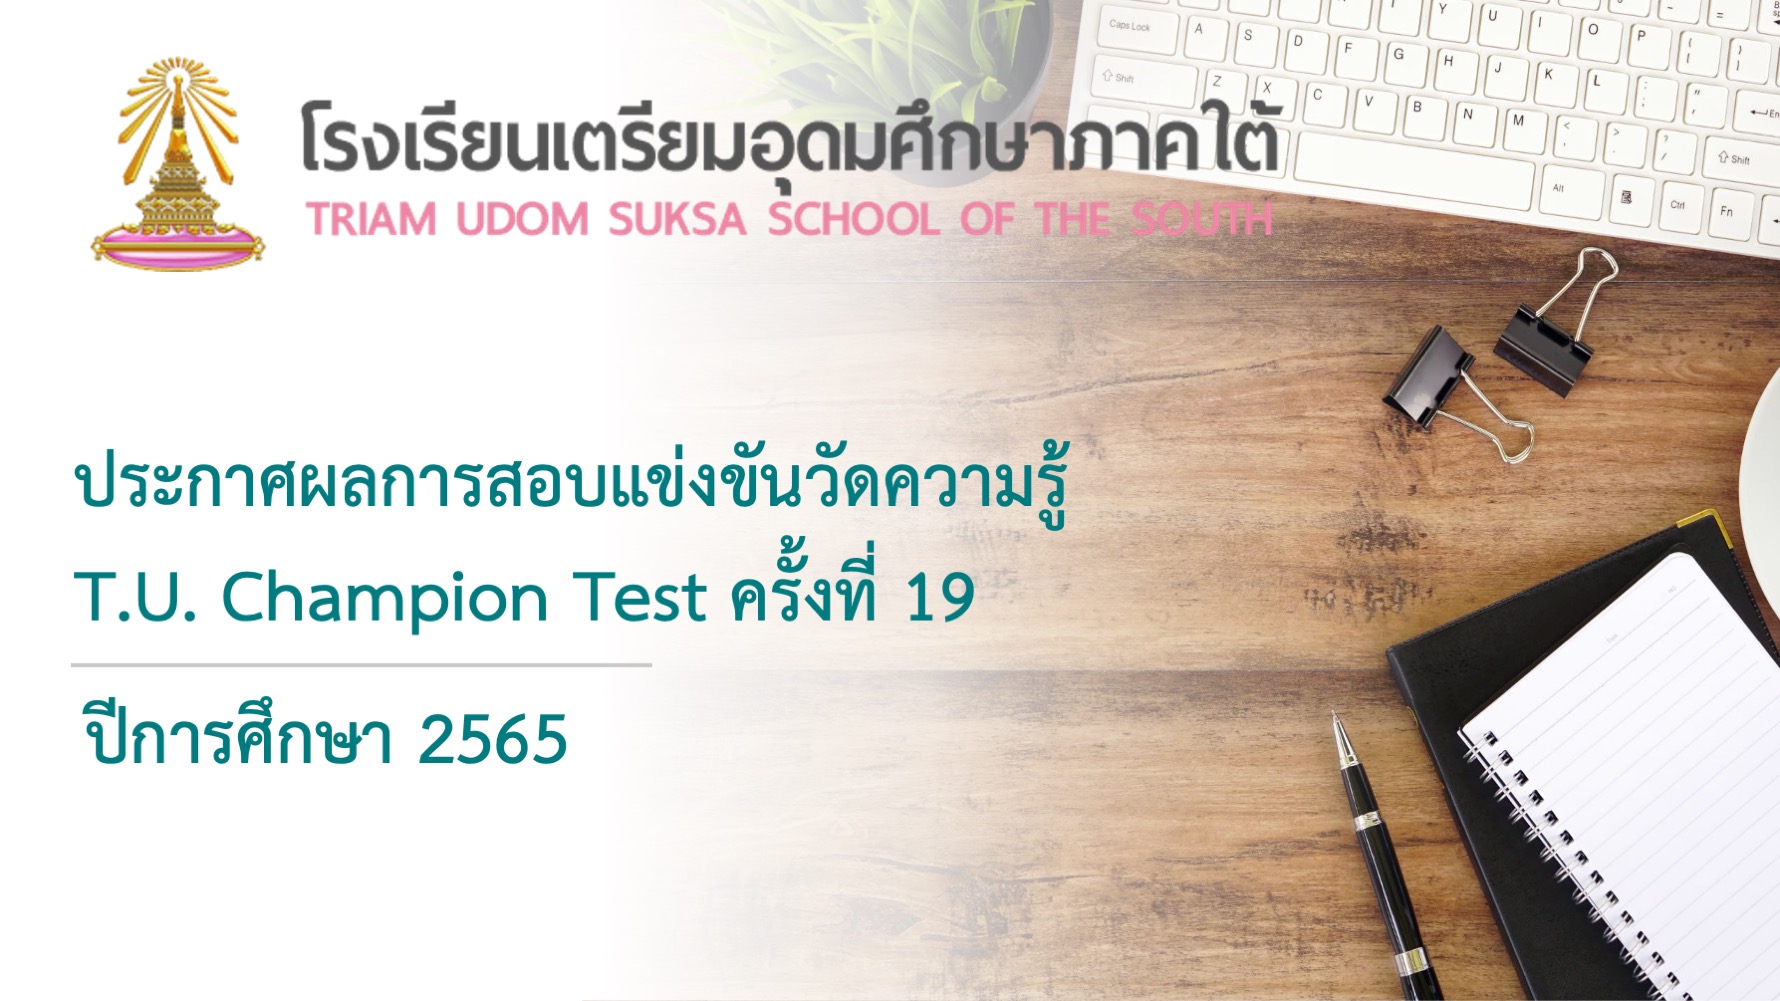 ประกาศผลการสอบแข่งขันวัดความรู้ T.U.Champion Test ครั้งที่ 19 ปีการศึกษา 2565